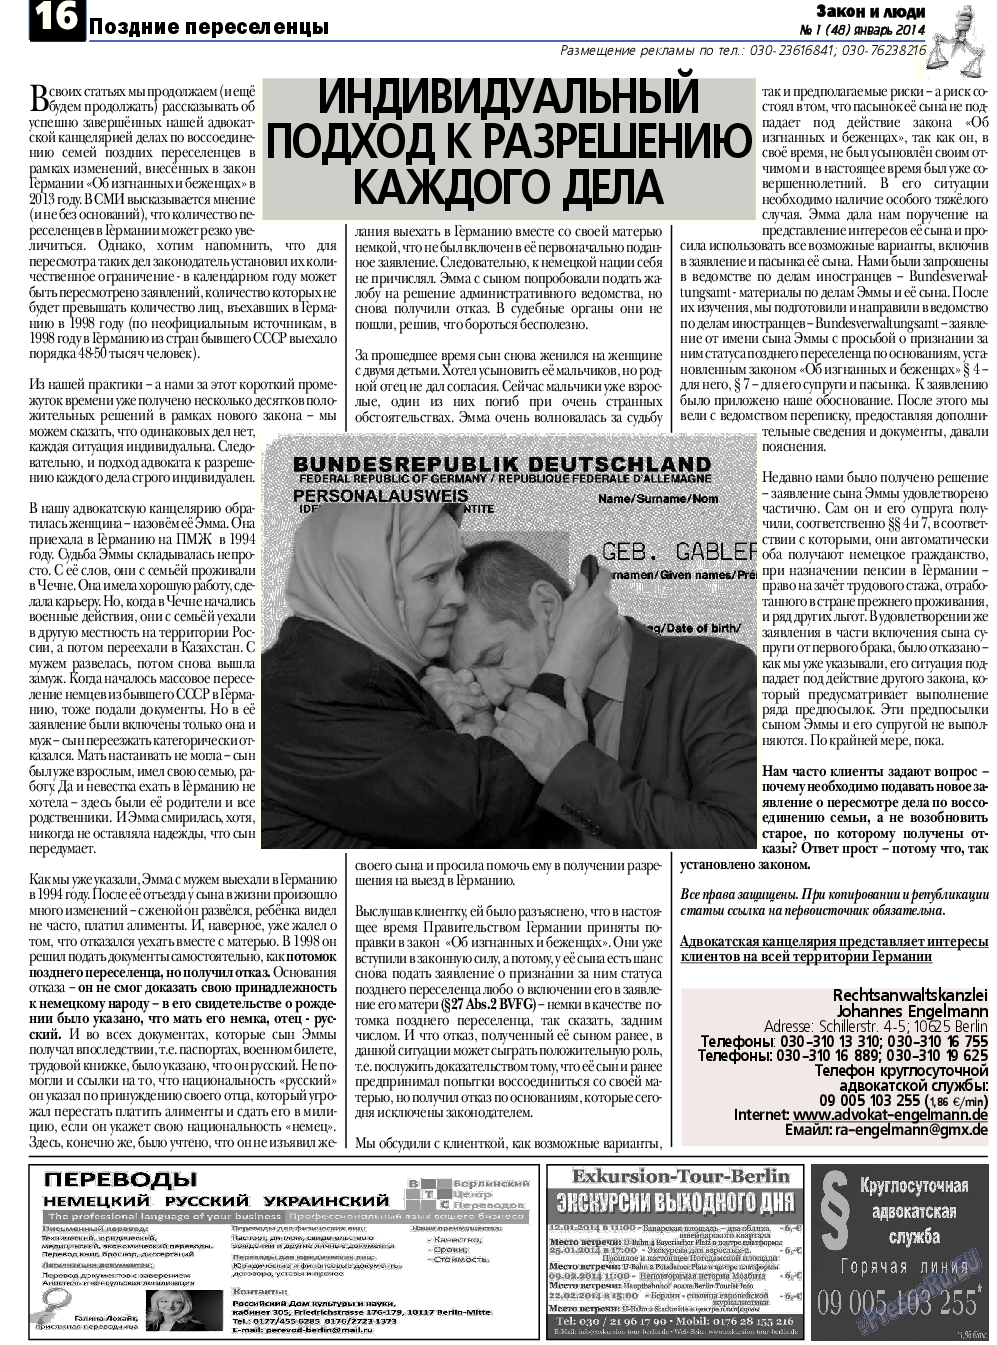 Закон и люди, газета. 2014 №1 стр.16